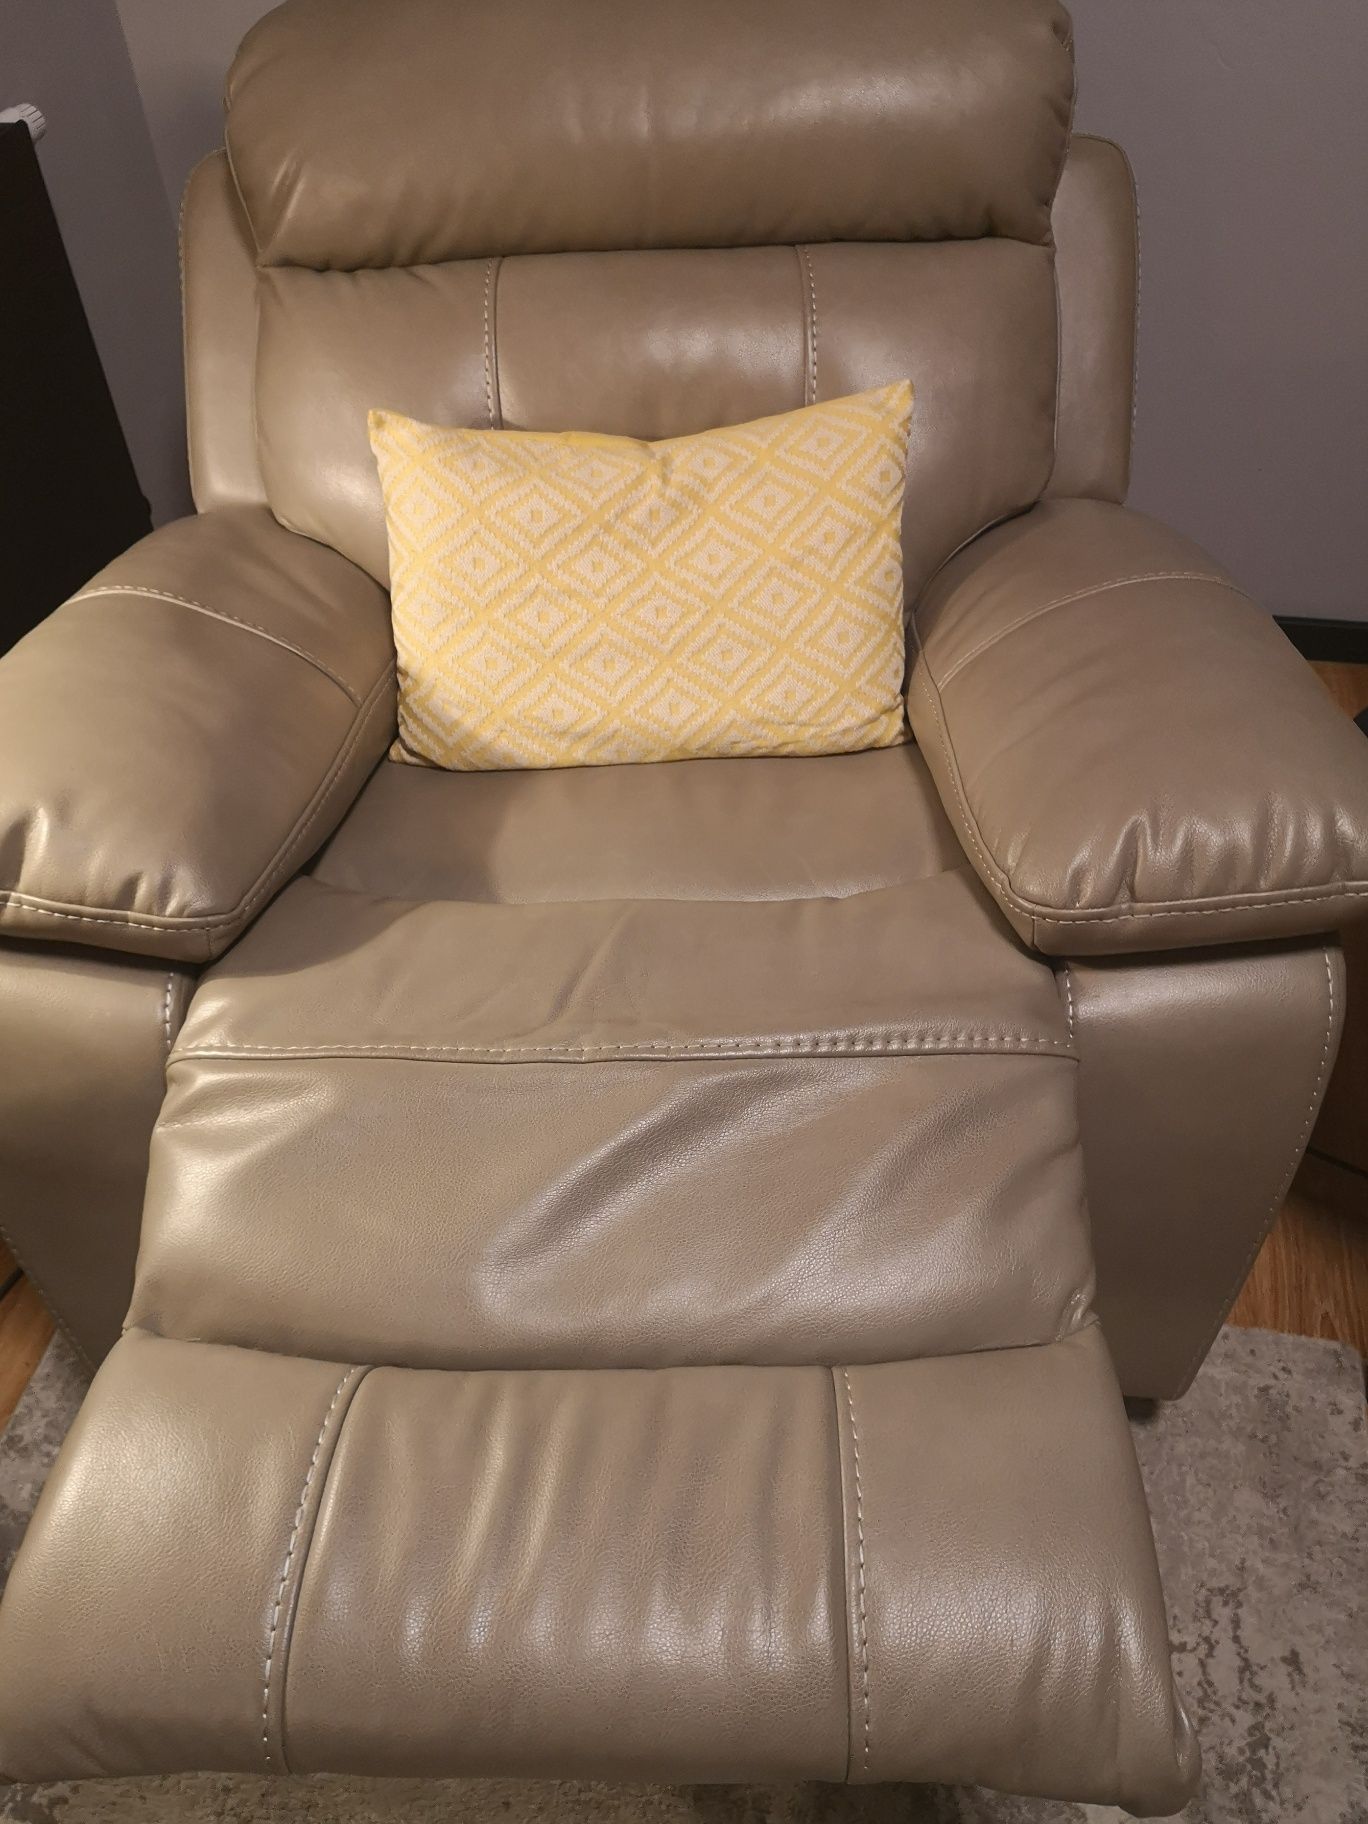 Fotel rozkładany cheers relax, tkanina specjalna wzmocniona